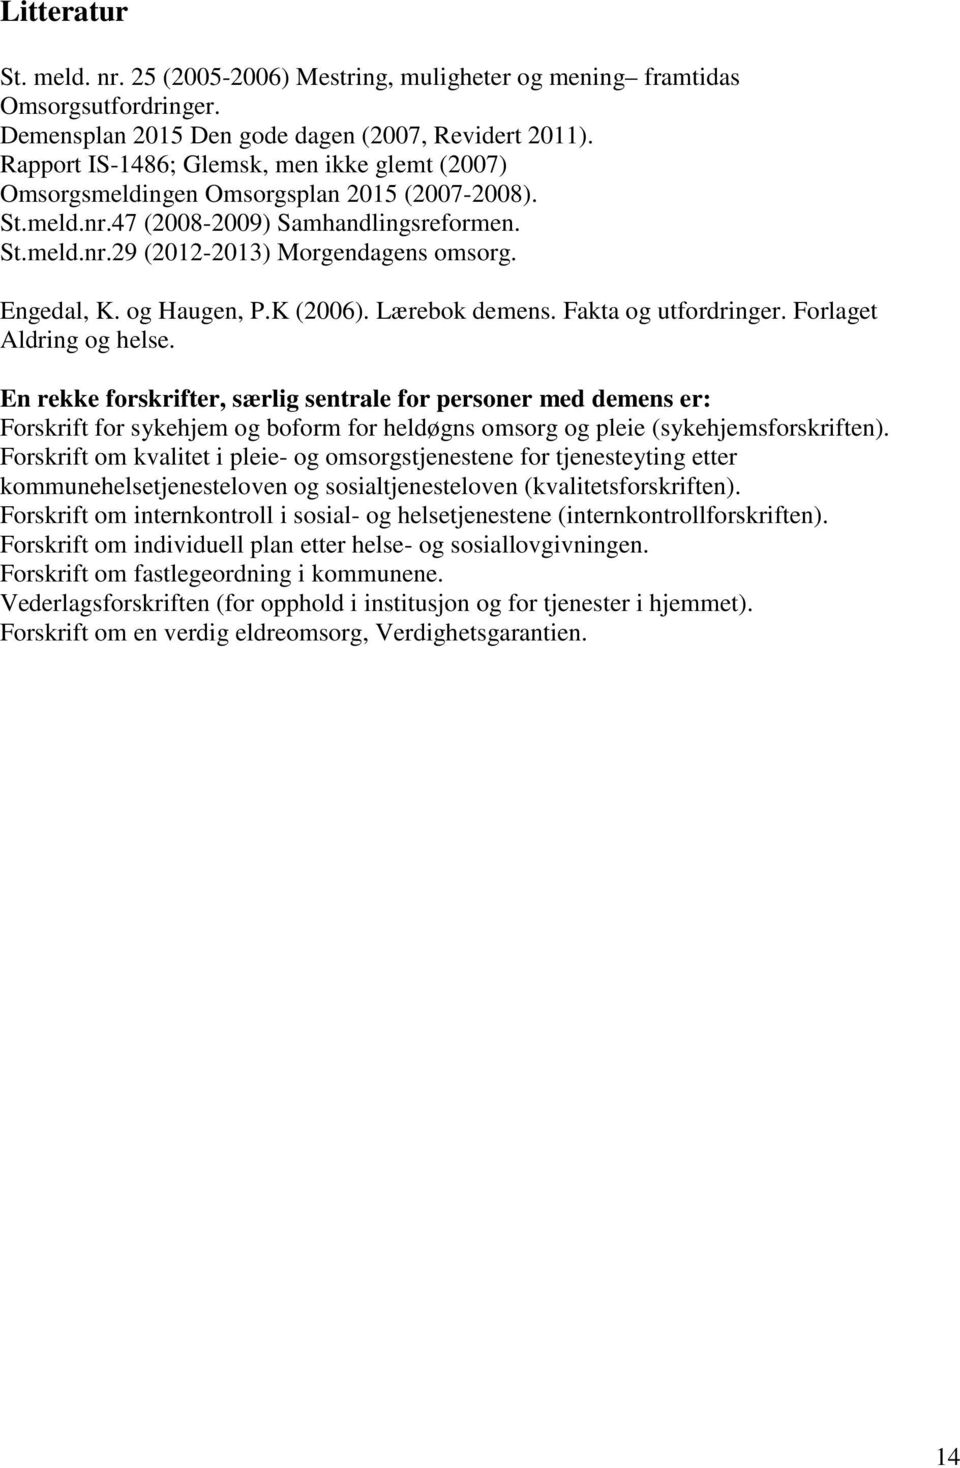 og Haugen, P.K (2006). Lærebok demens. Fakta og utfordringer. Forlaget Aldring og helse.